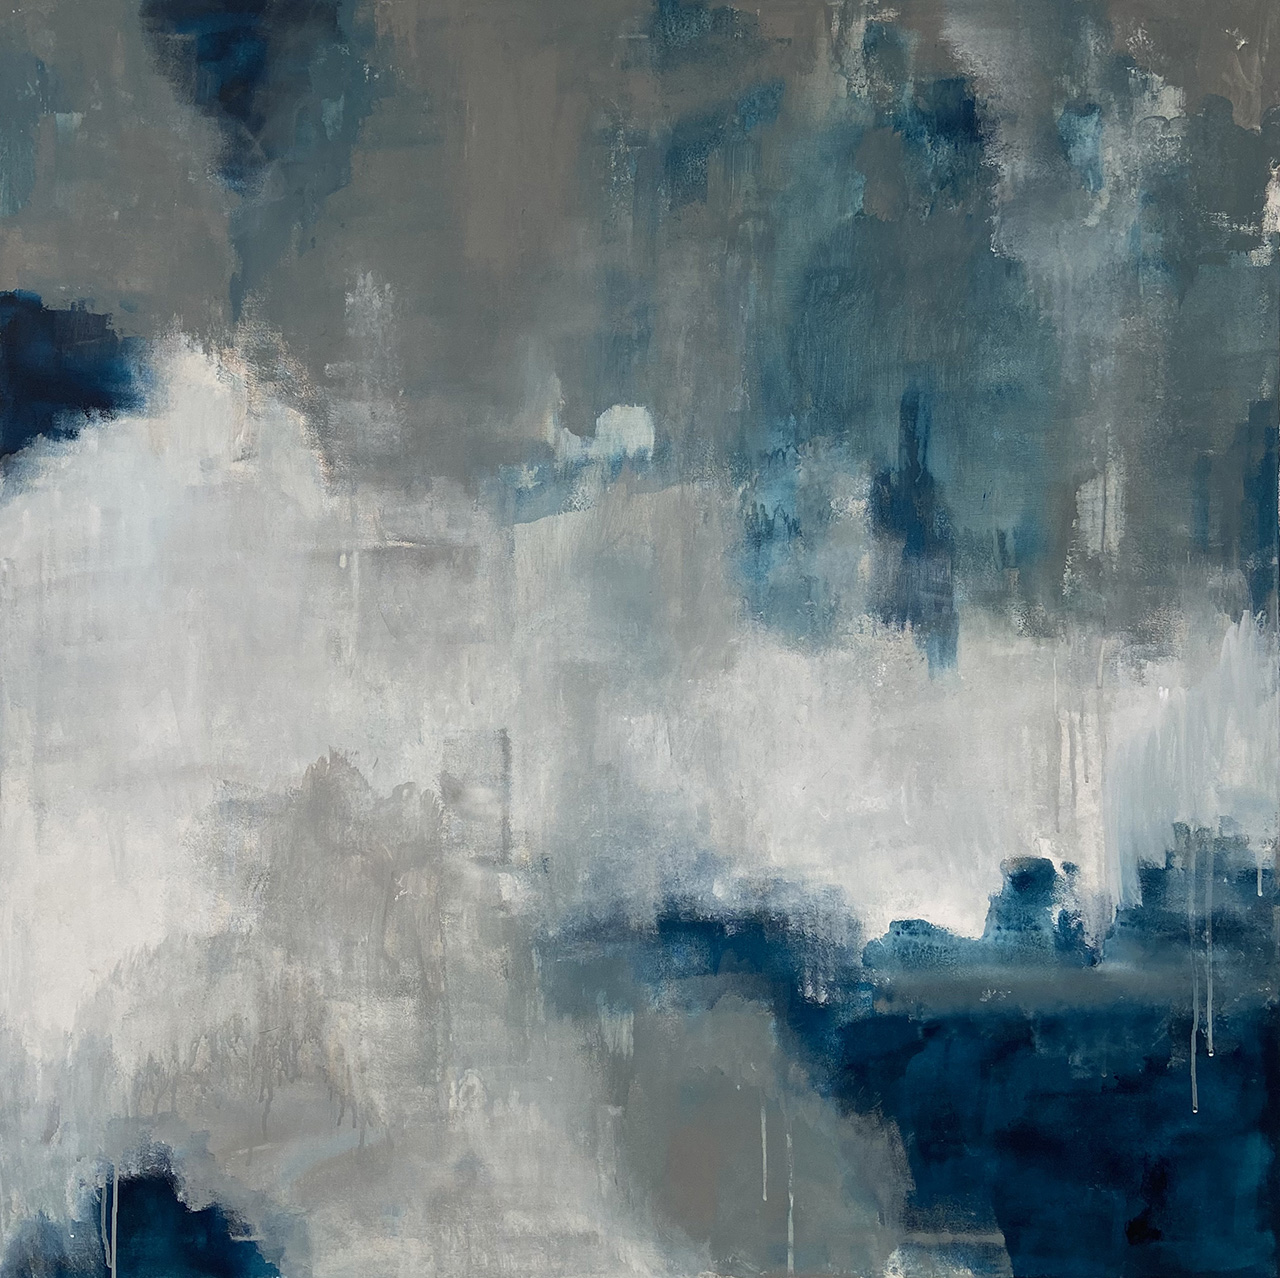 Pintura abstracta de Patricia Vega-Hazas con texturas azules